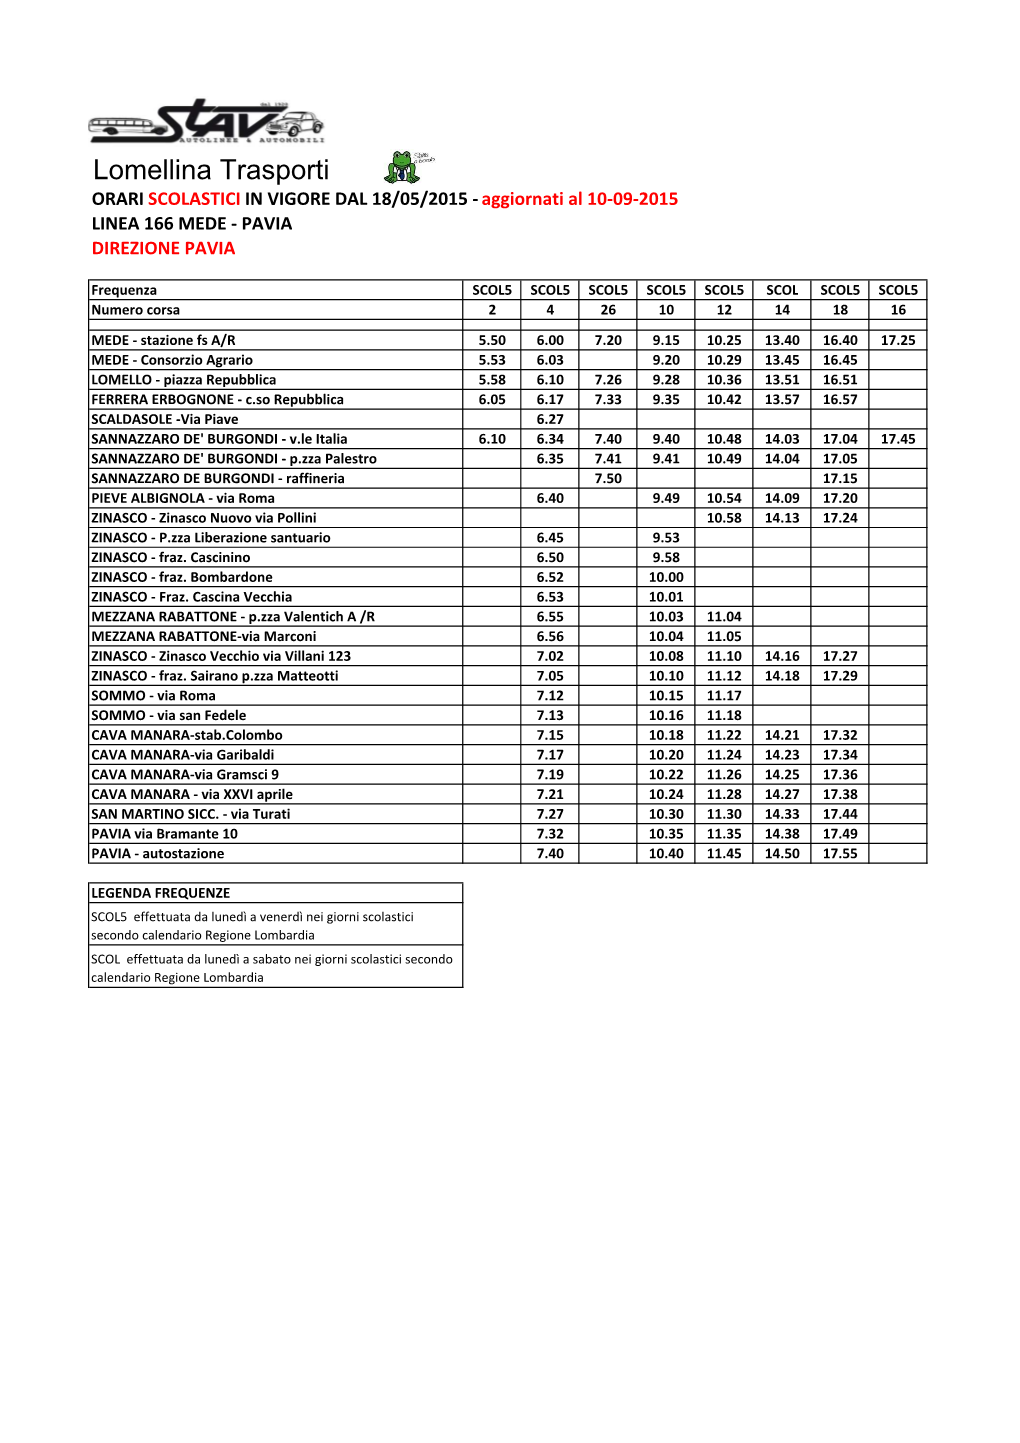 Lomellina Trasporti ORARI SCOLASTICI in VIGORE DAL 18/05/2015 - Aggiornati Al 10-09-2015 LINEA 166 MEDE - PAVIA DIREZIONE PAVIA